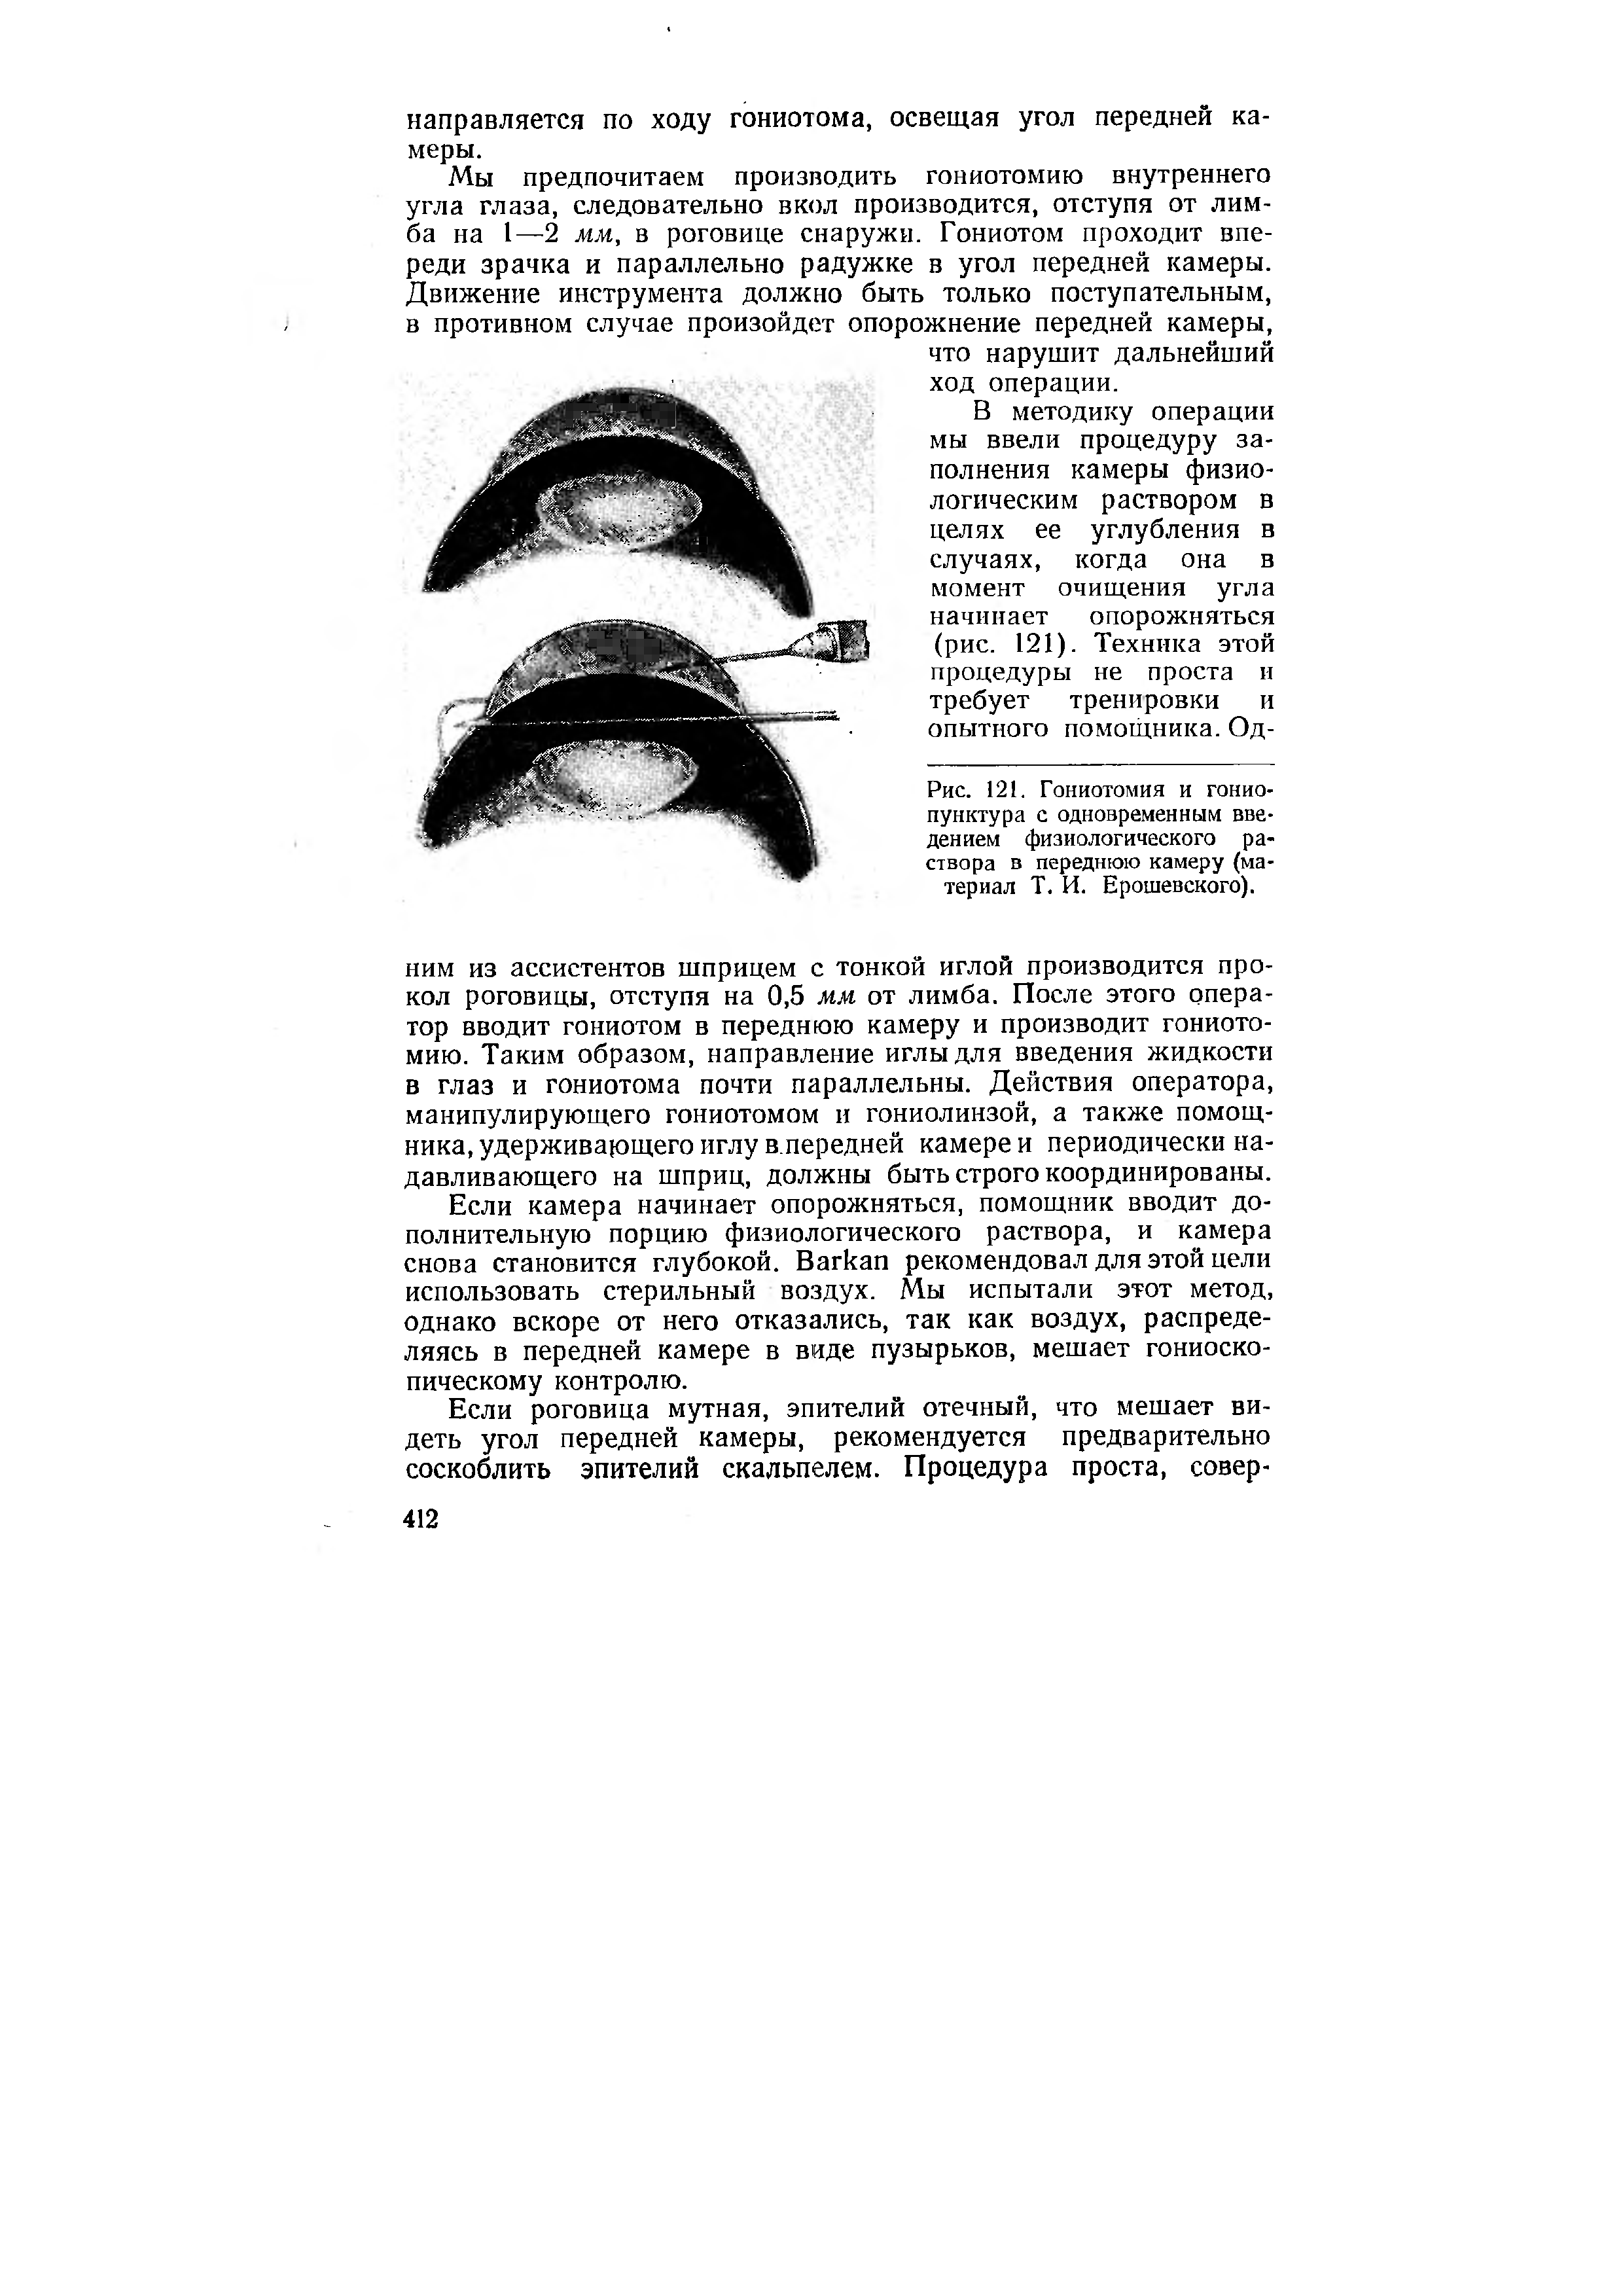 Рис. 121. Гониотомия и гонио-пунктура с одновременным введением физиологического раствора в переднюю камеру (материал Т. И. Брошевского).